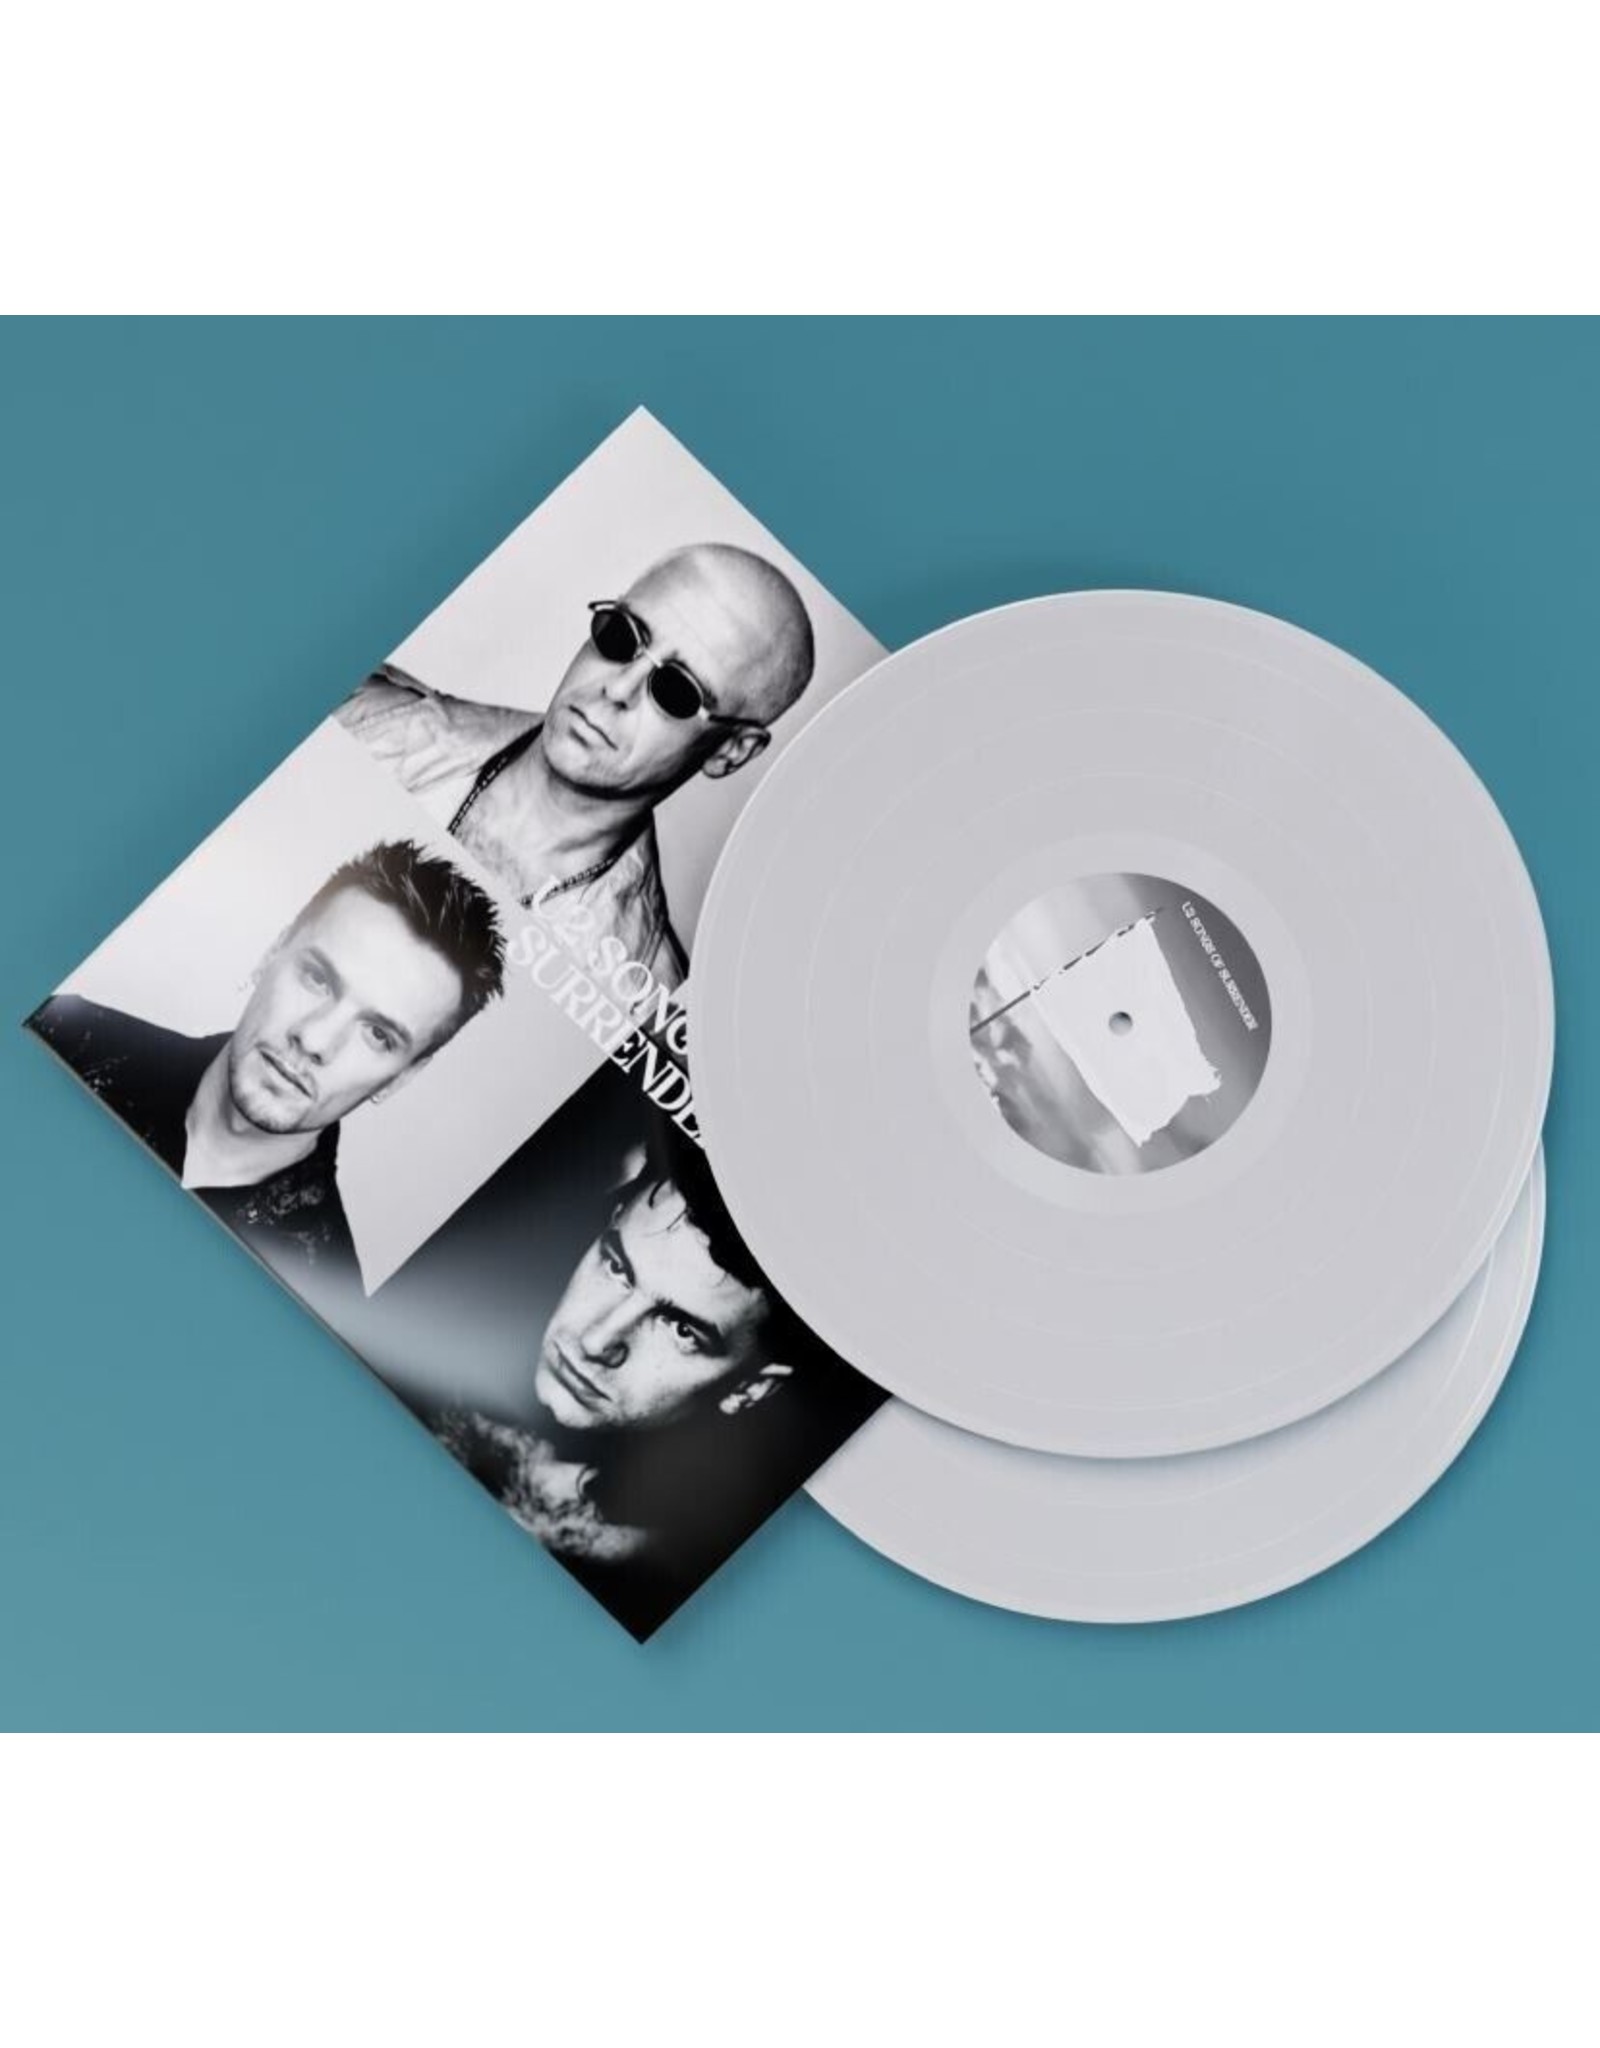 U2 - Songs of Surrender (Exclusive White Vinyl)